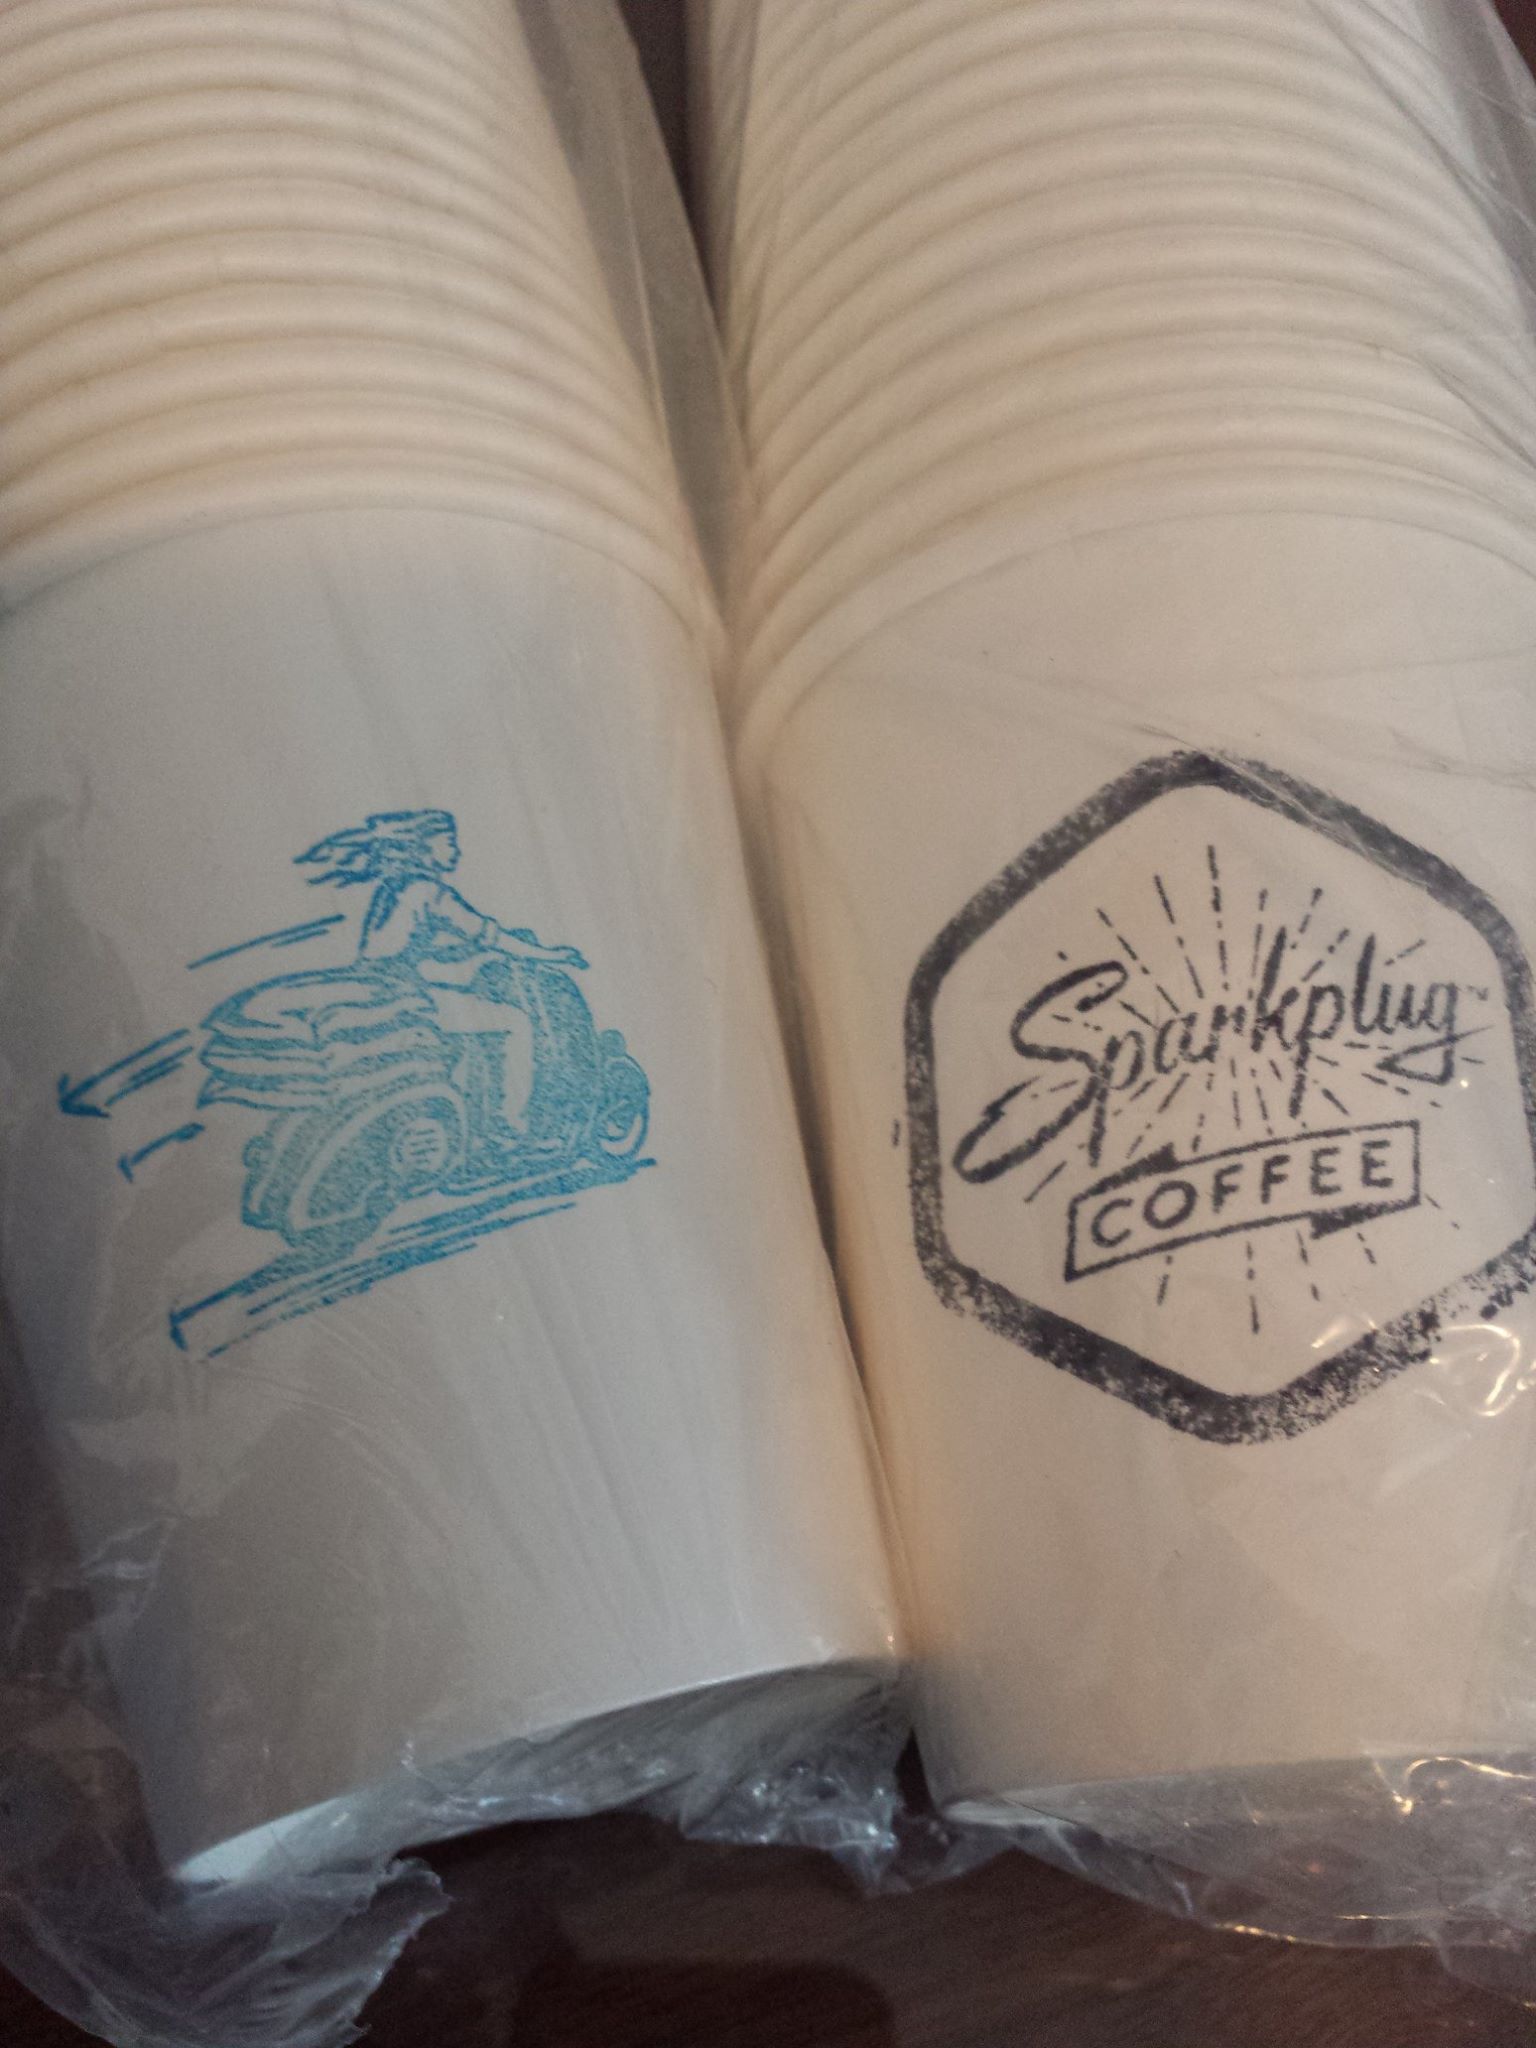 SPC-coffeecups.jpg